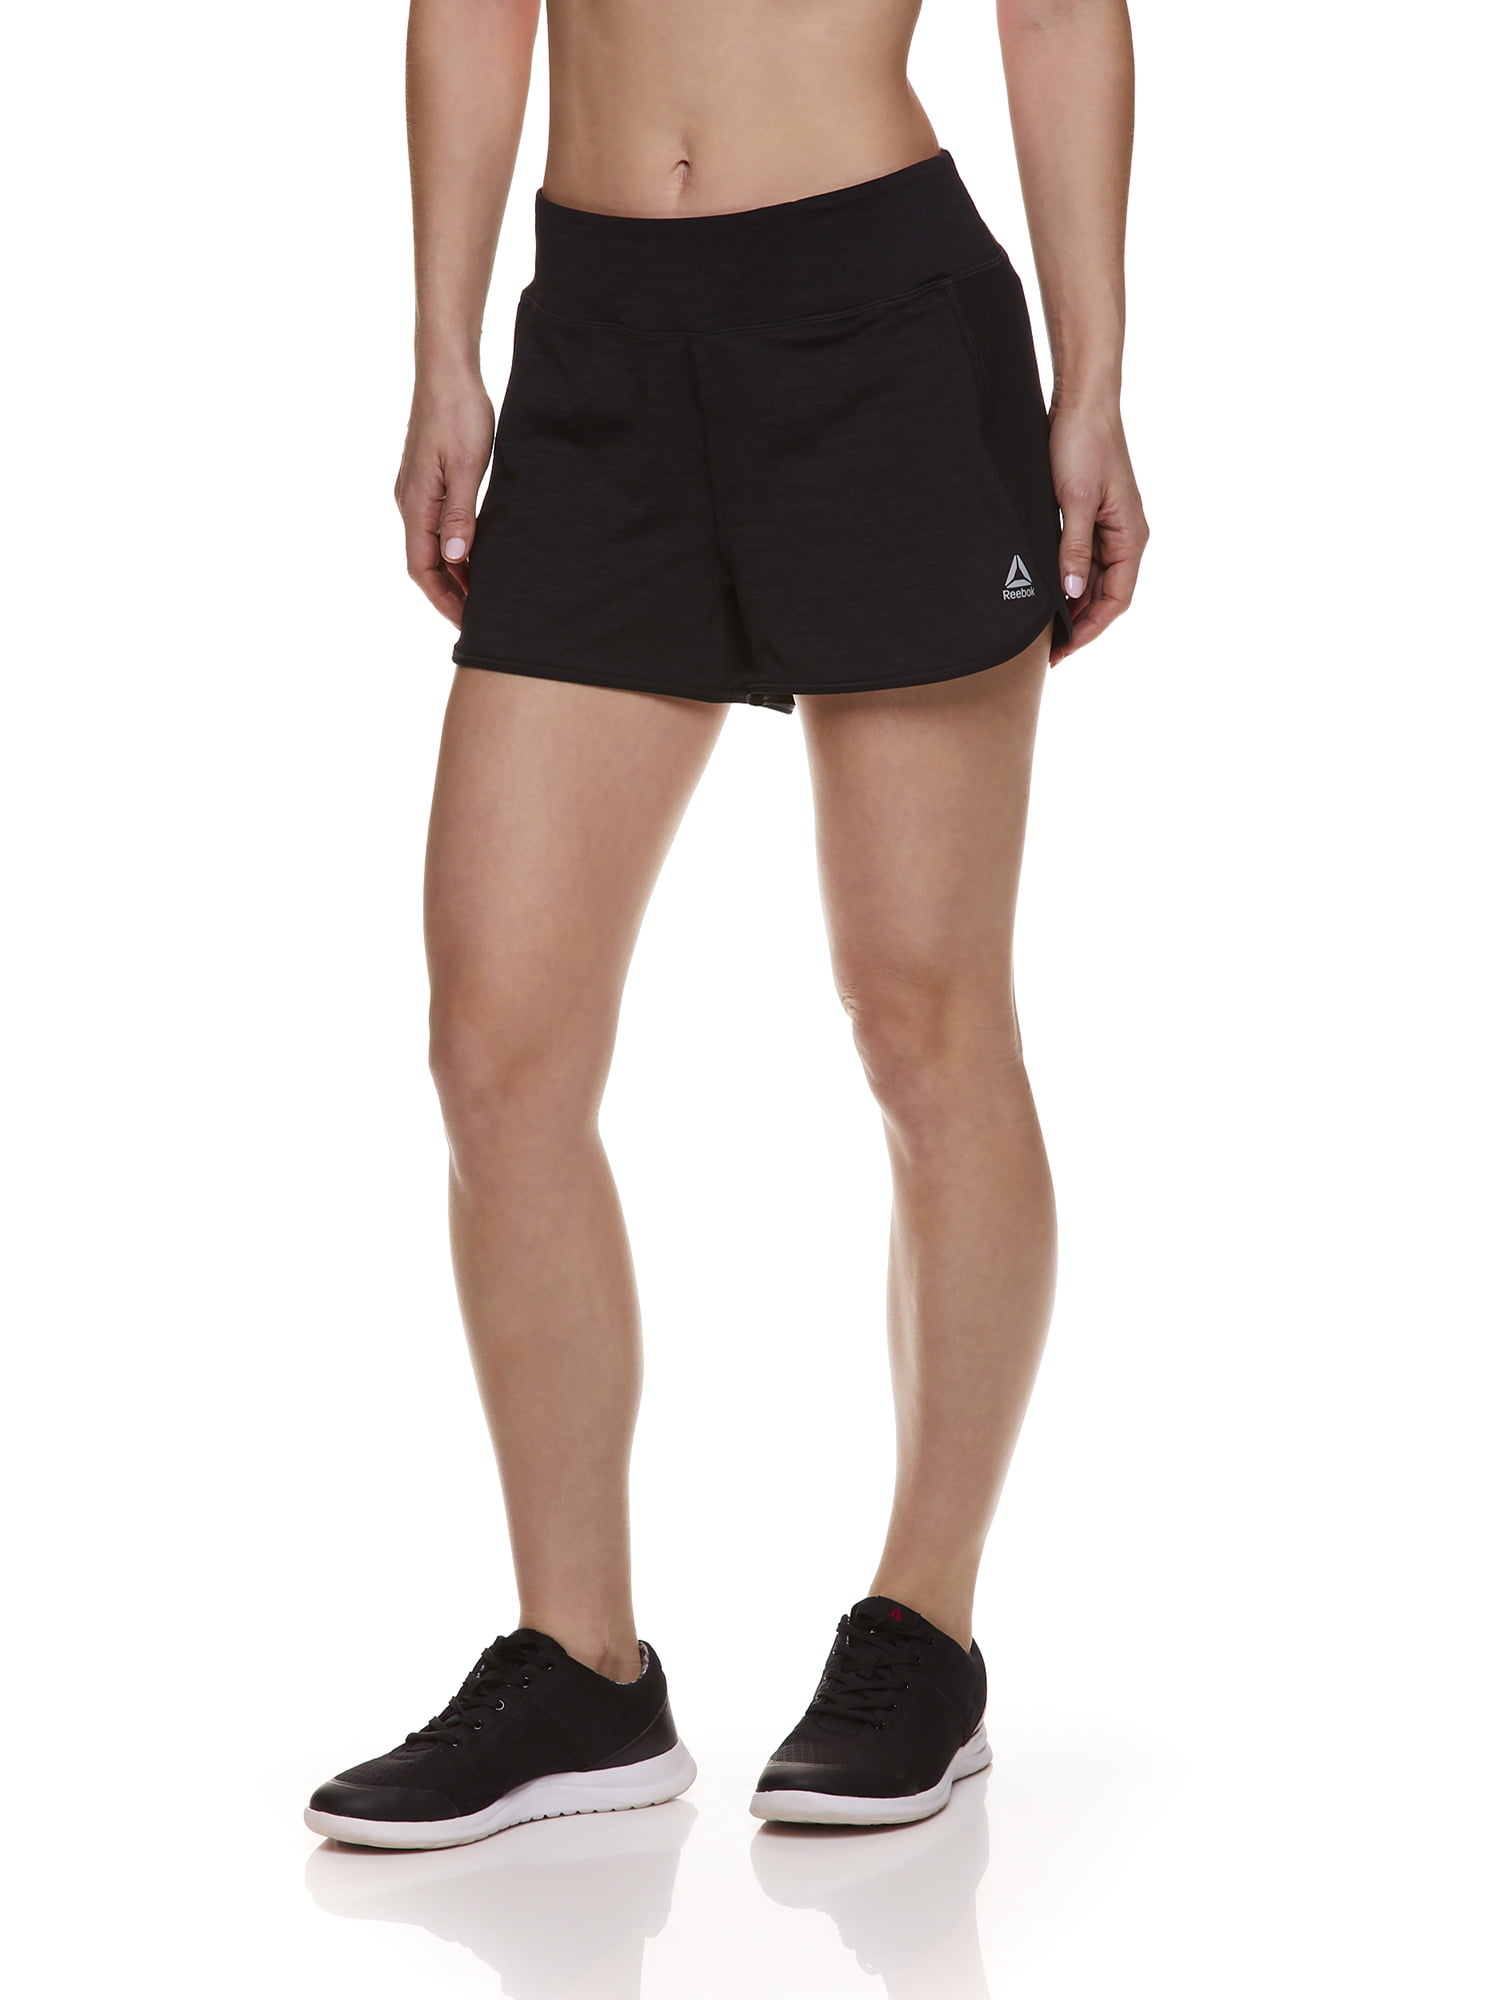 klap stykke and Reebok Women's Shorts - Walmart.com